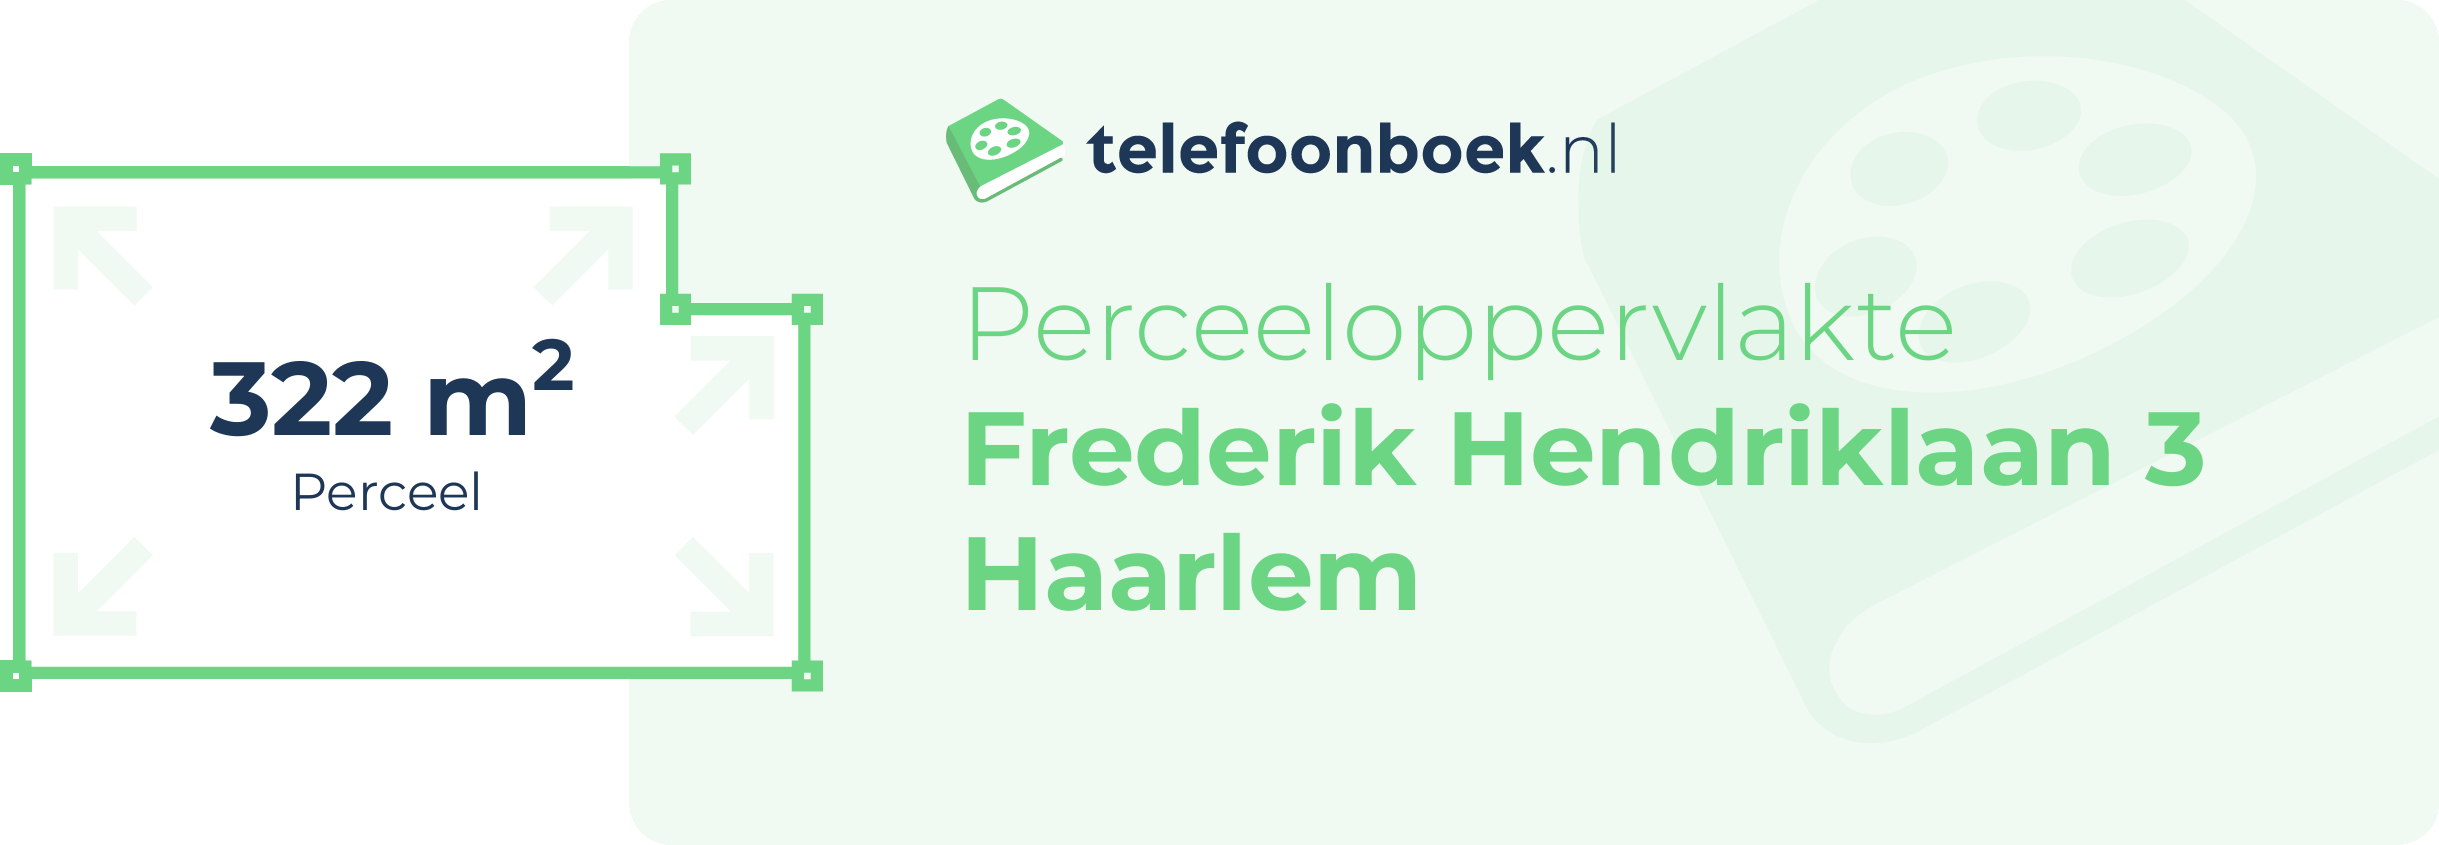 Perceeloppervlakte Frederik Hendriklaan 3 Haarlem